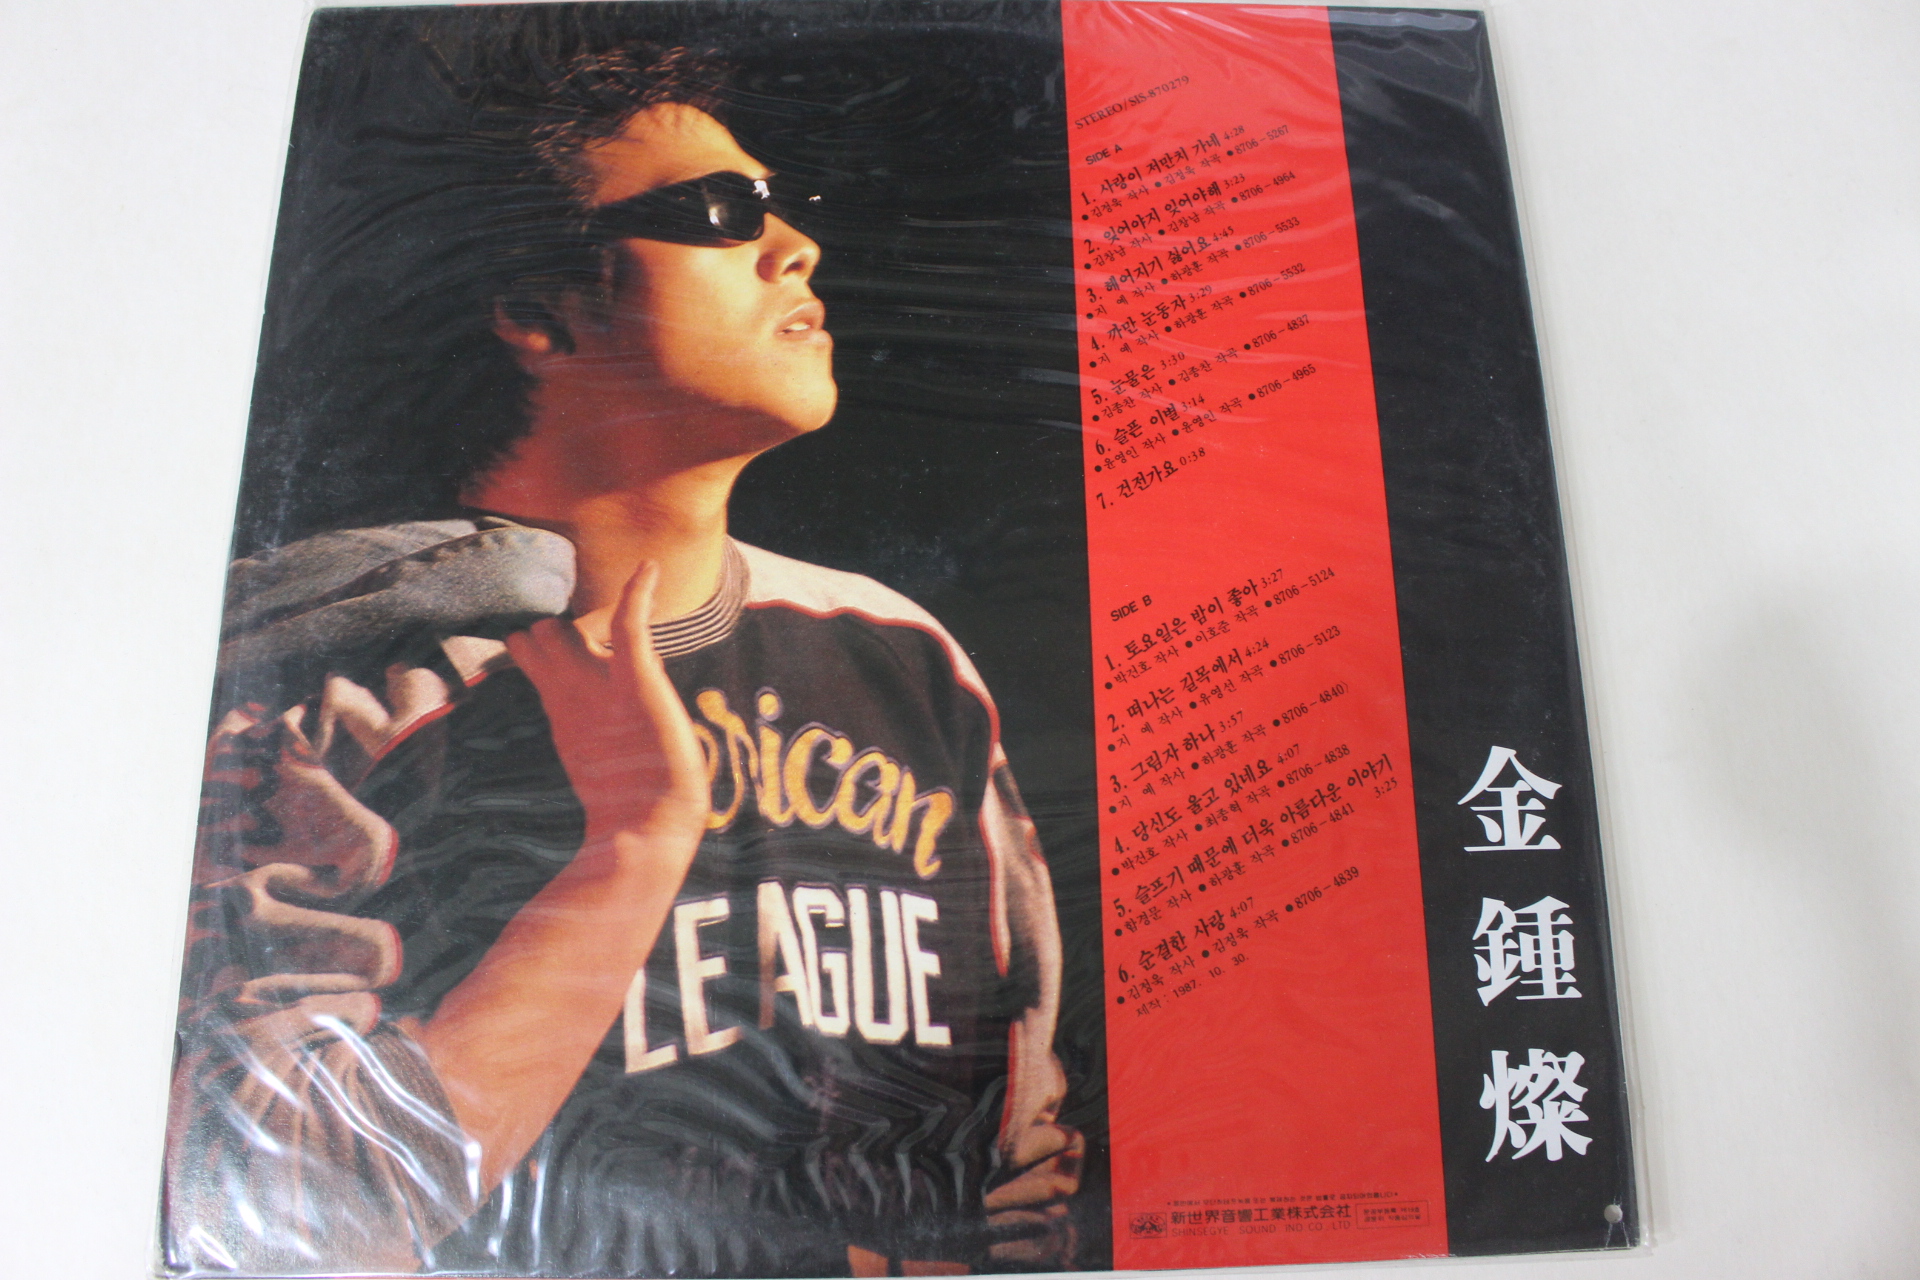 653-미개봉레코드판 1987년 김종찬